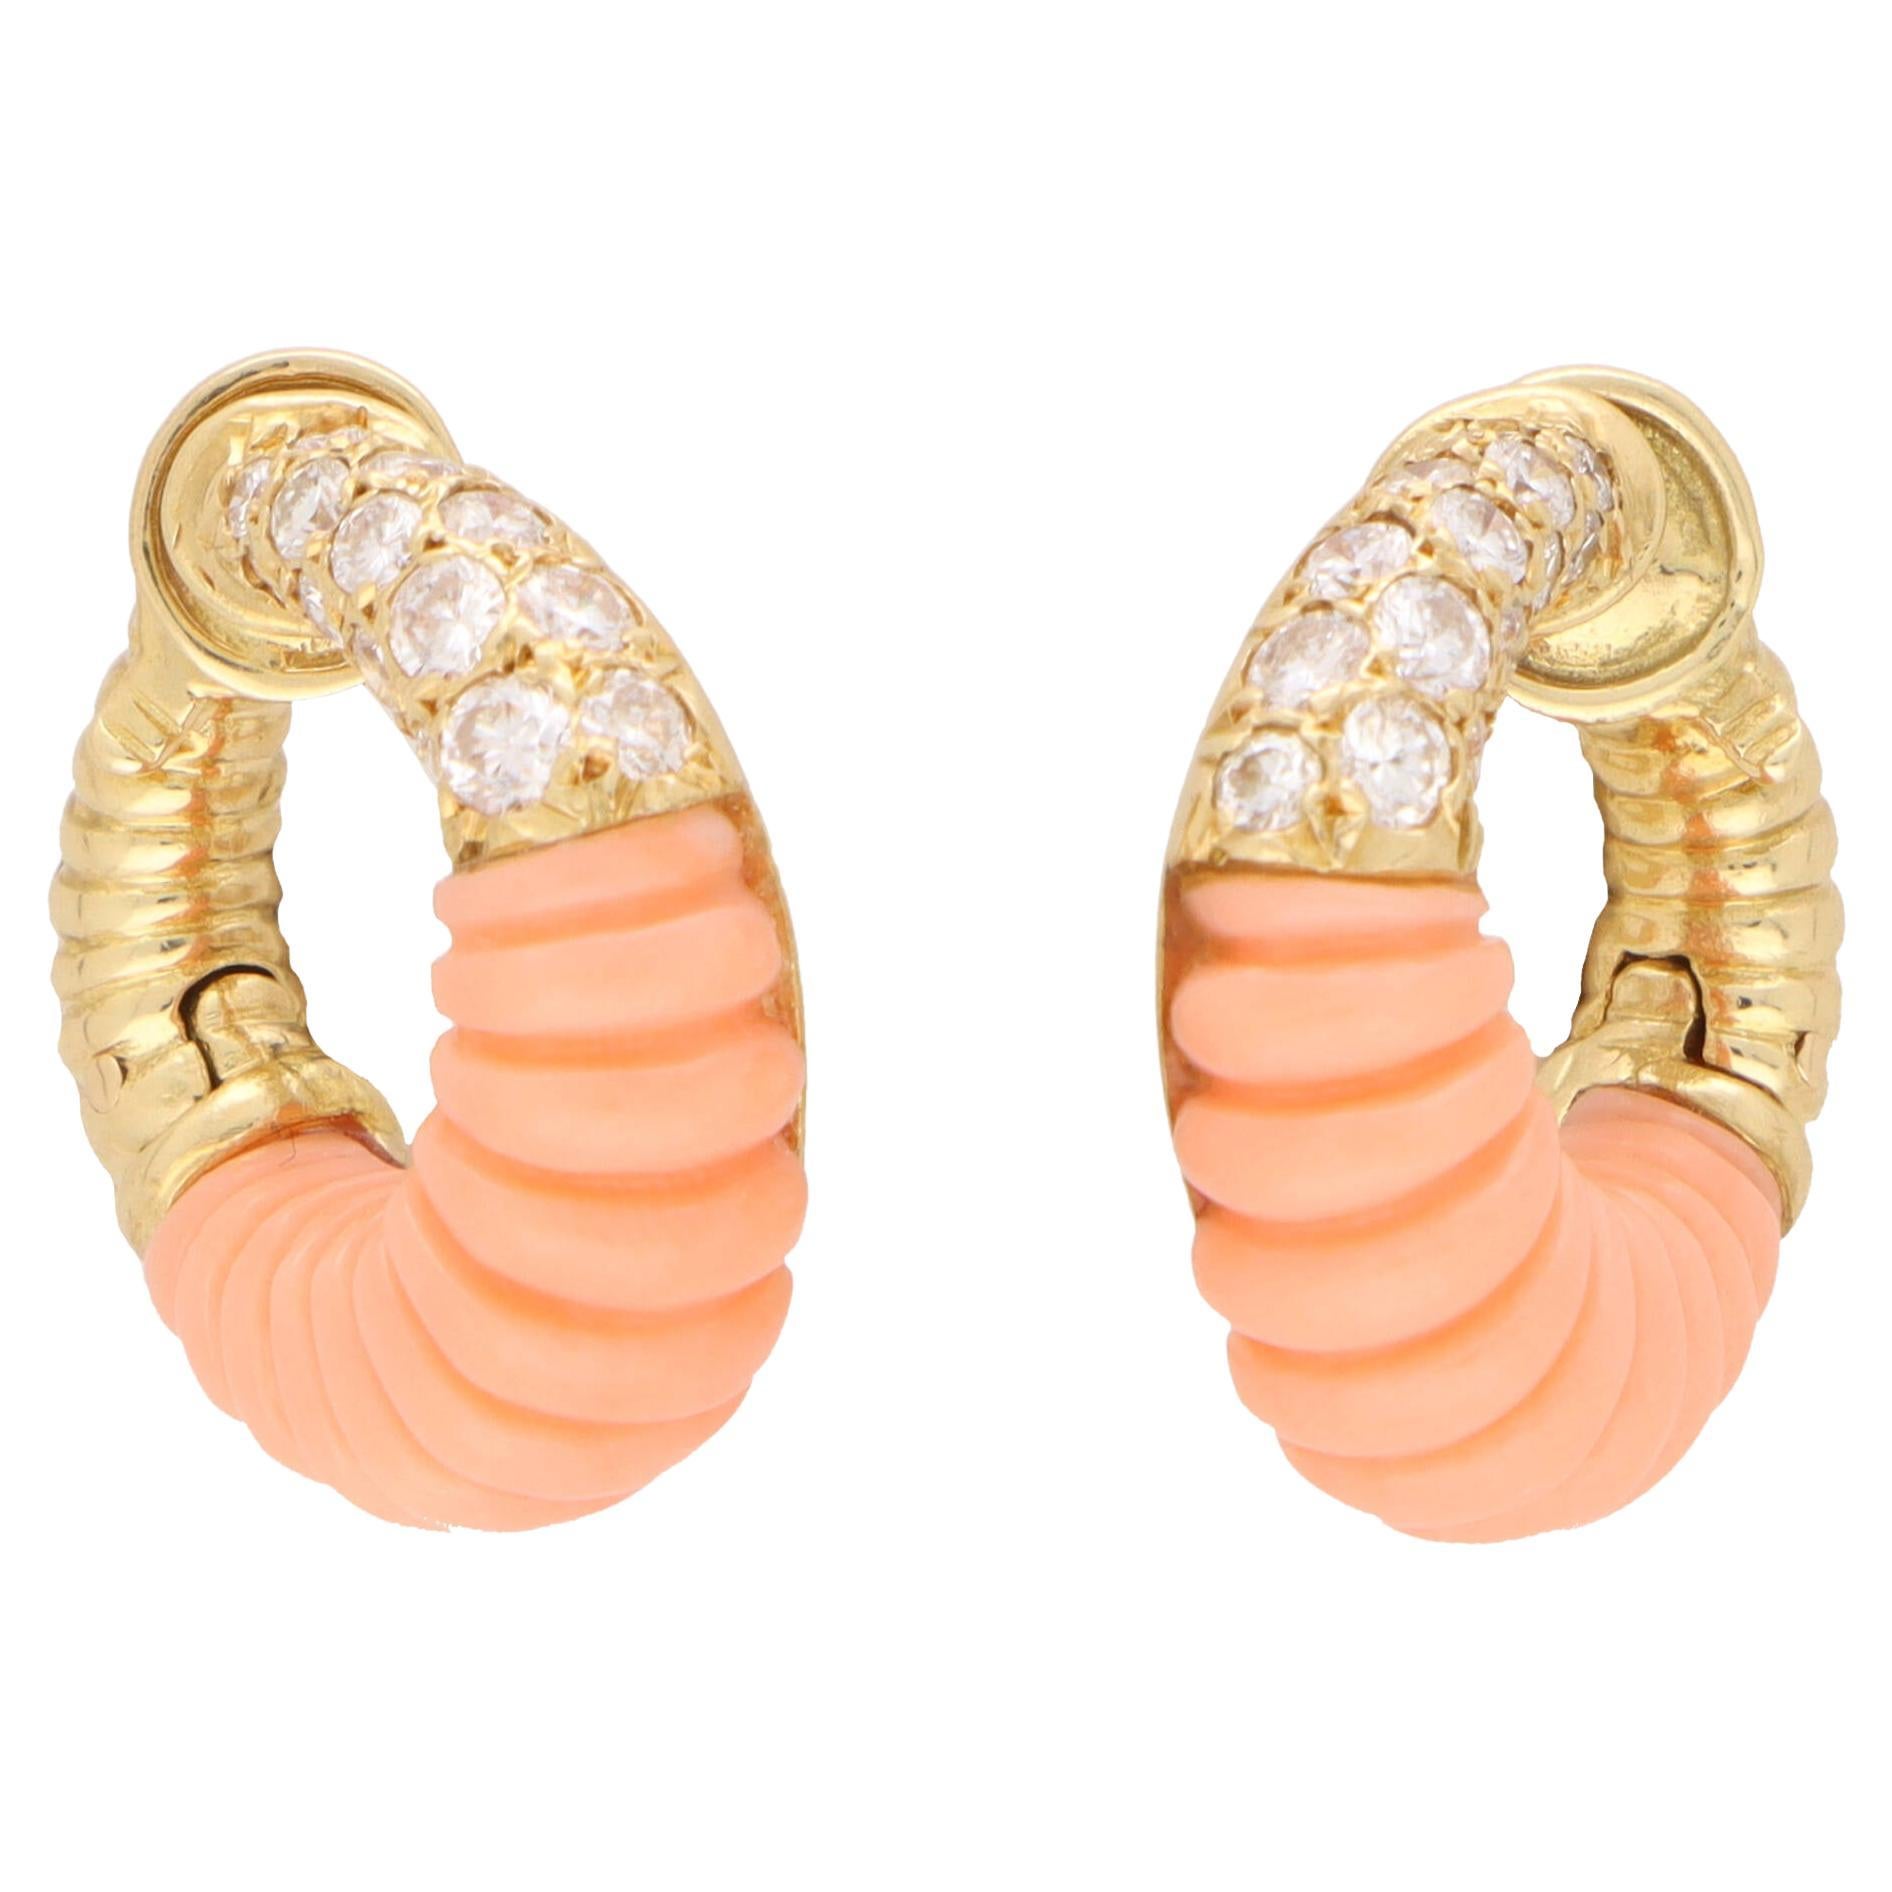 Vintage Van Cleef & Arpels Coral and Diamond Hoop Earrings in 18k Yellow Gold For Sale